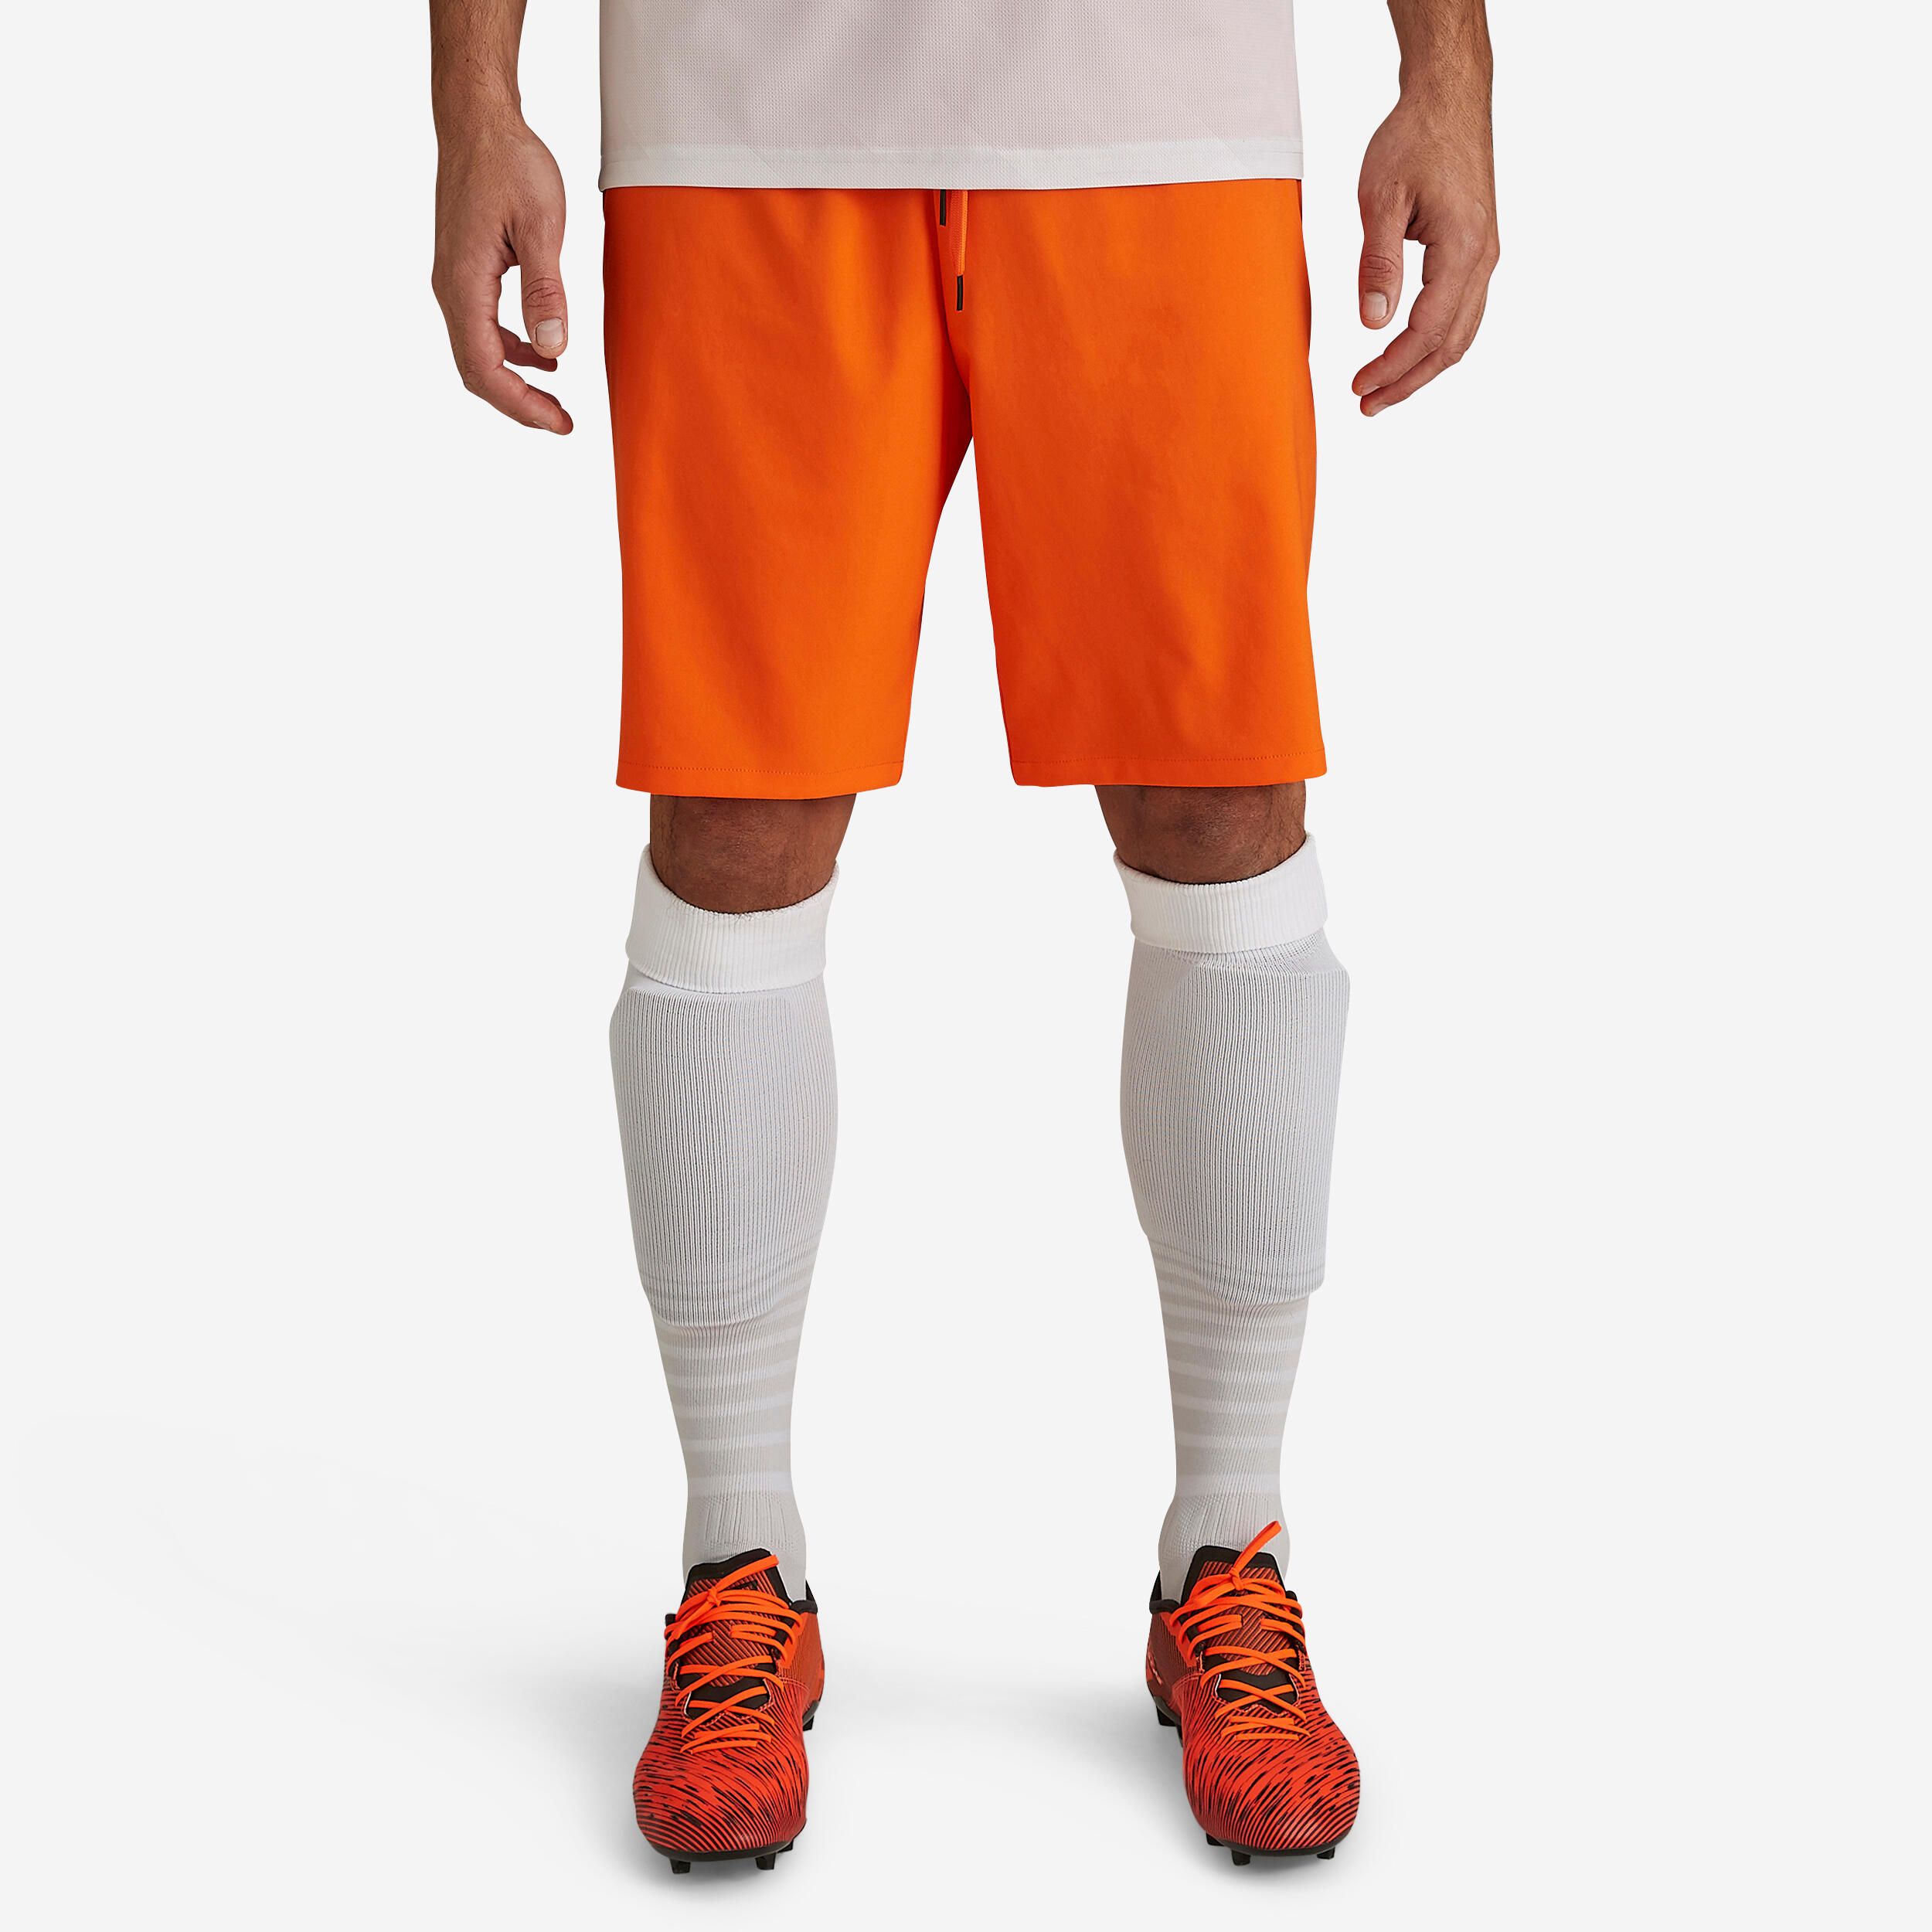 Damen/Herren Fussball Shorts Viralto orange